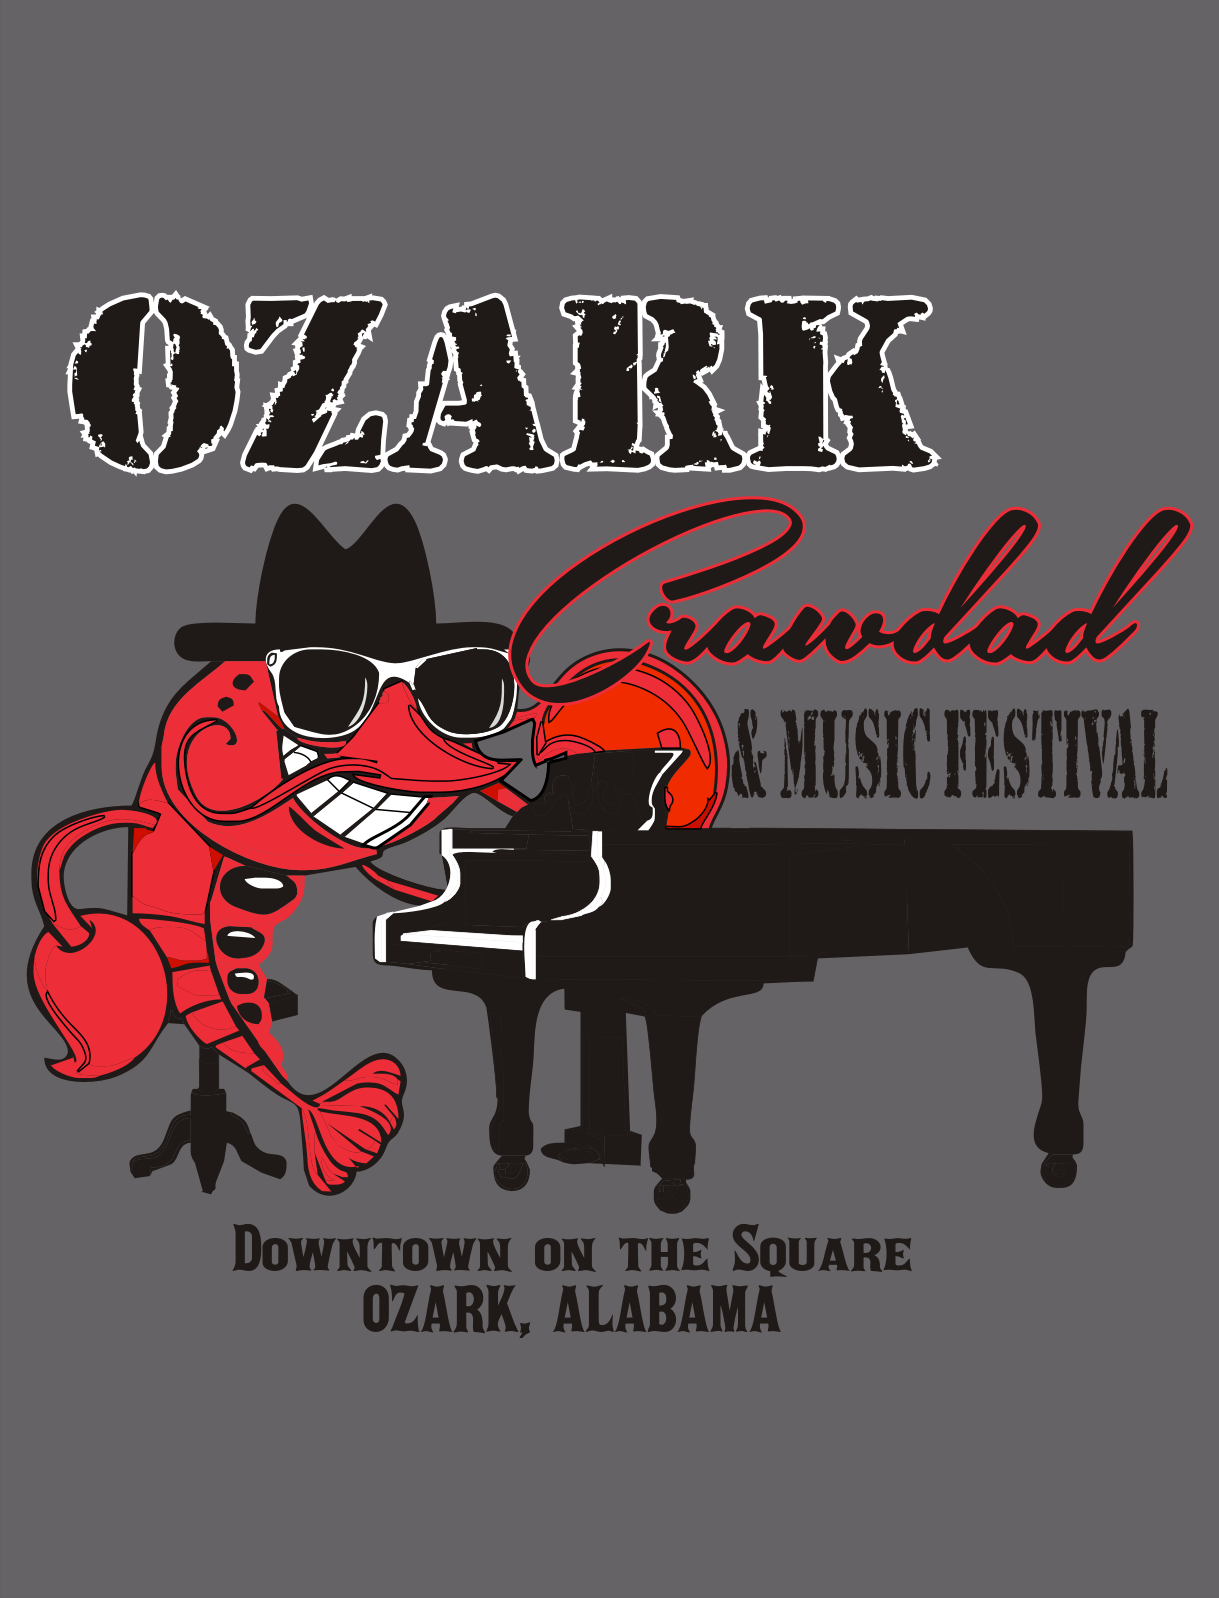 14th Annual Ozark Crawdad and Music Festival Ozark Alabama.Travel